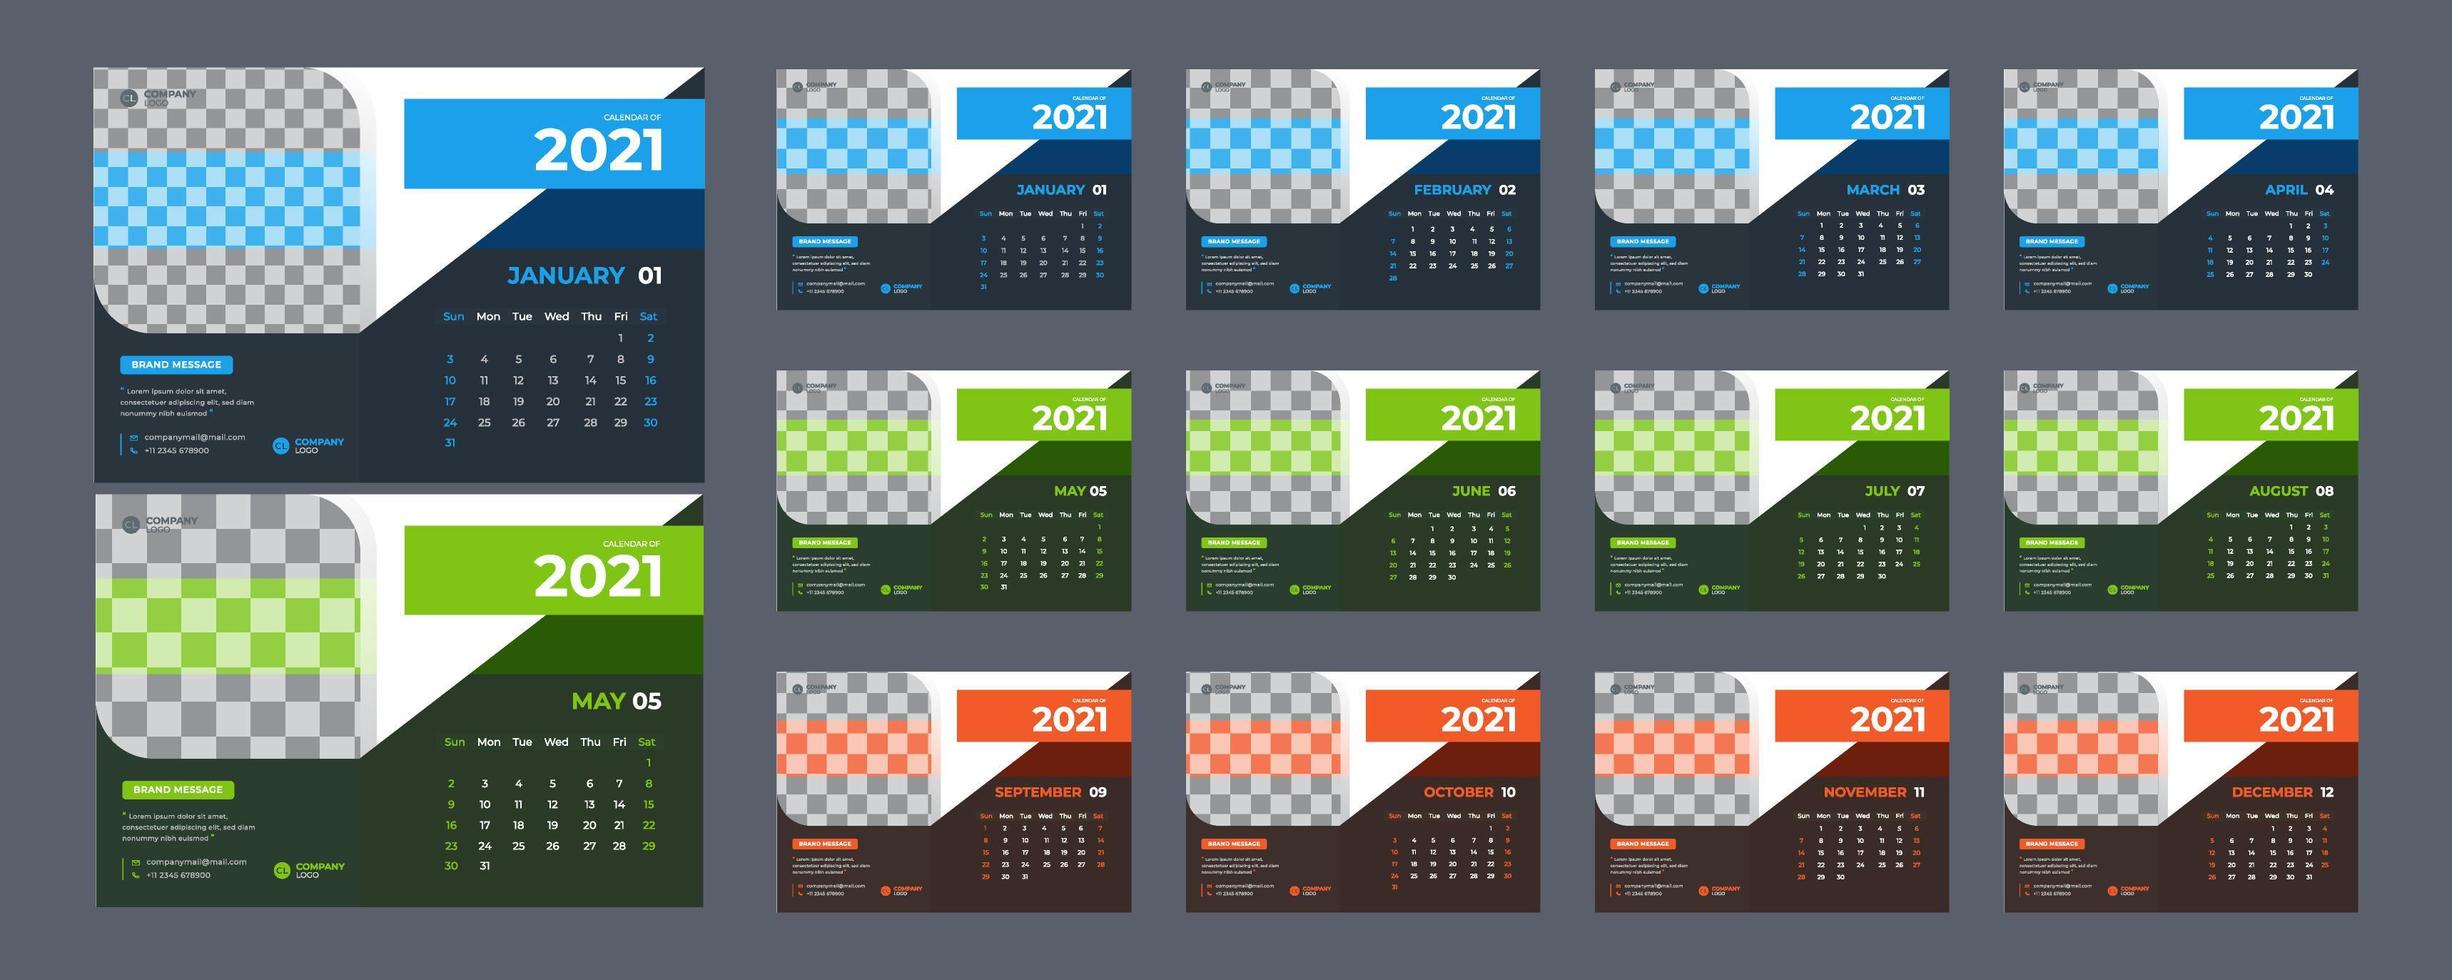 calendário de mesa moderno de 3 cores para 2021 vetor